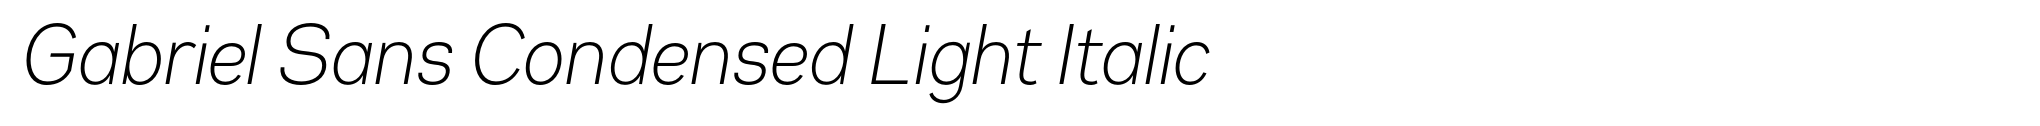 Gabriel Sans Condensed Light Italic image